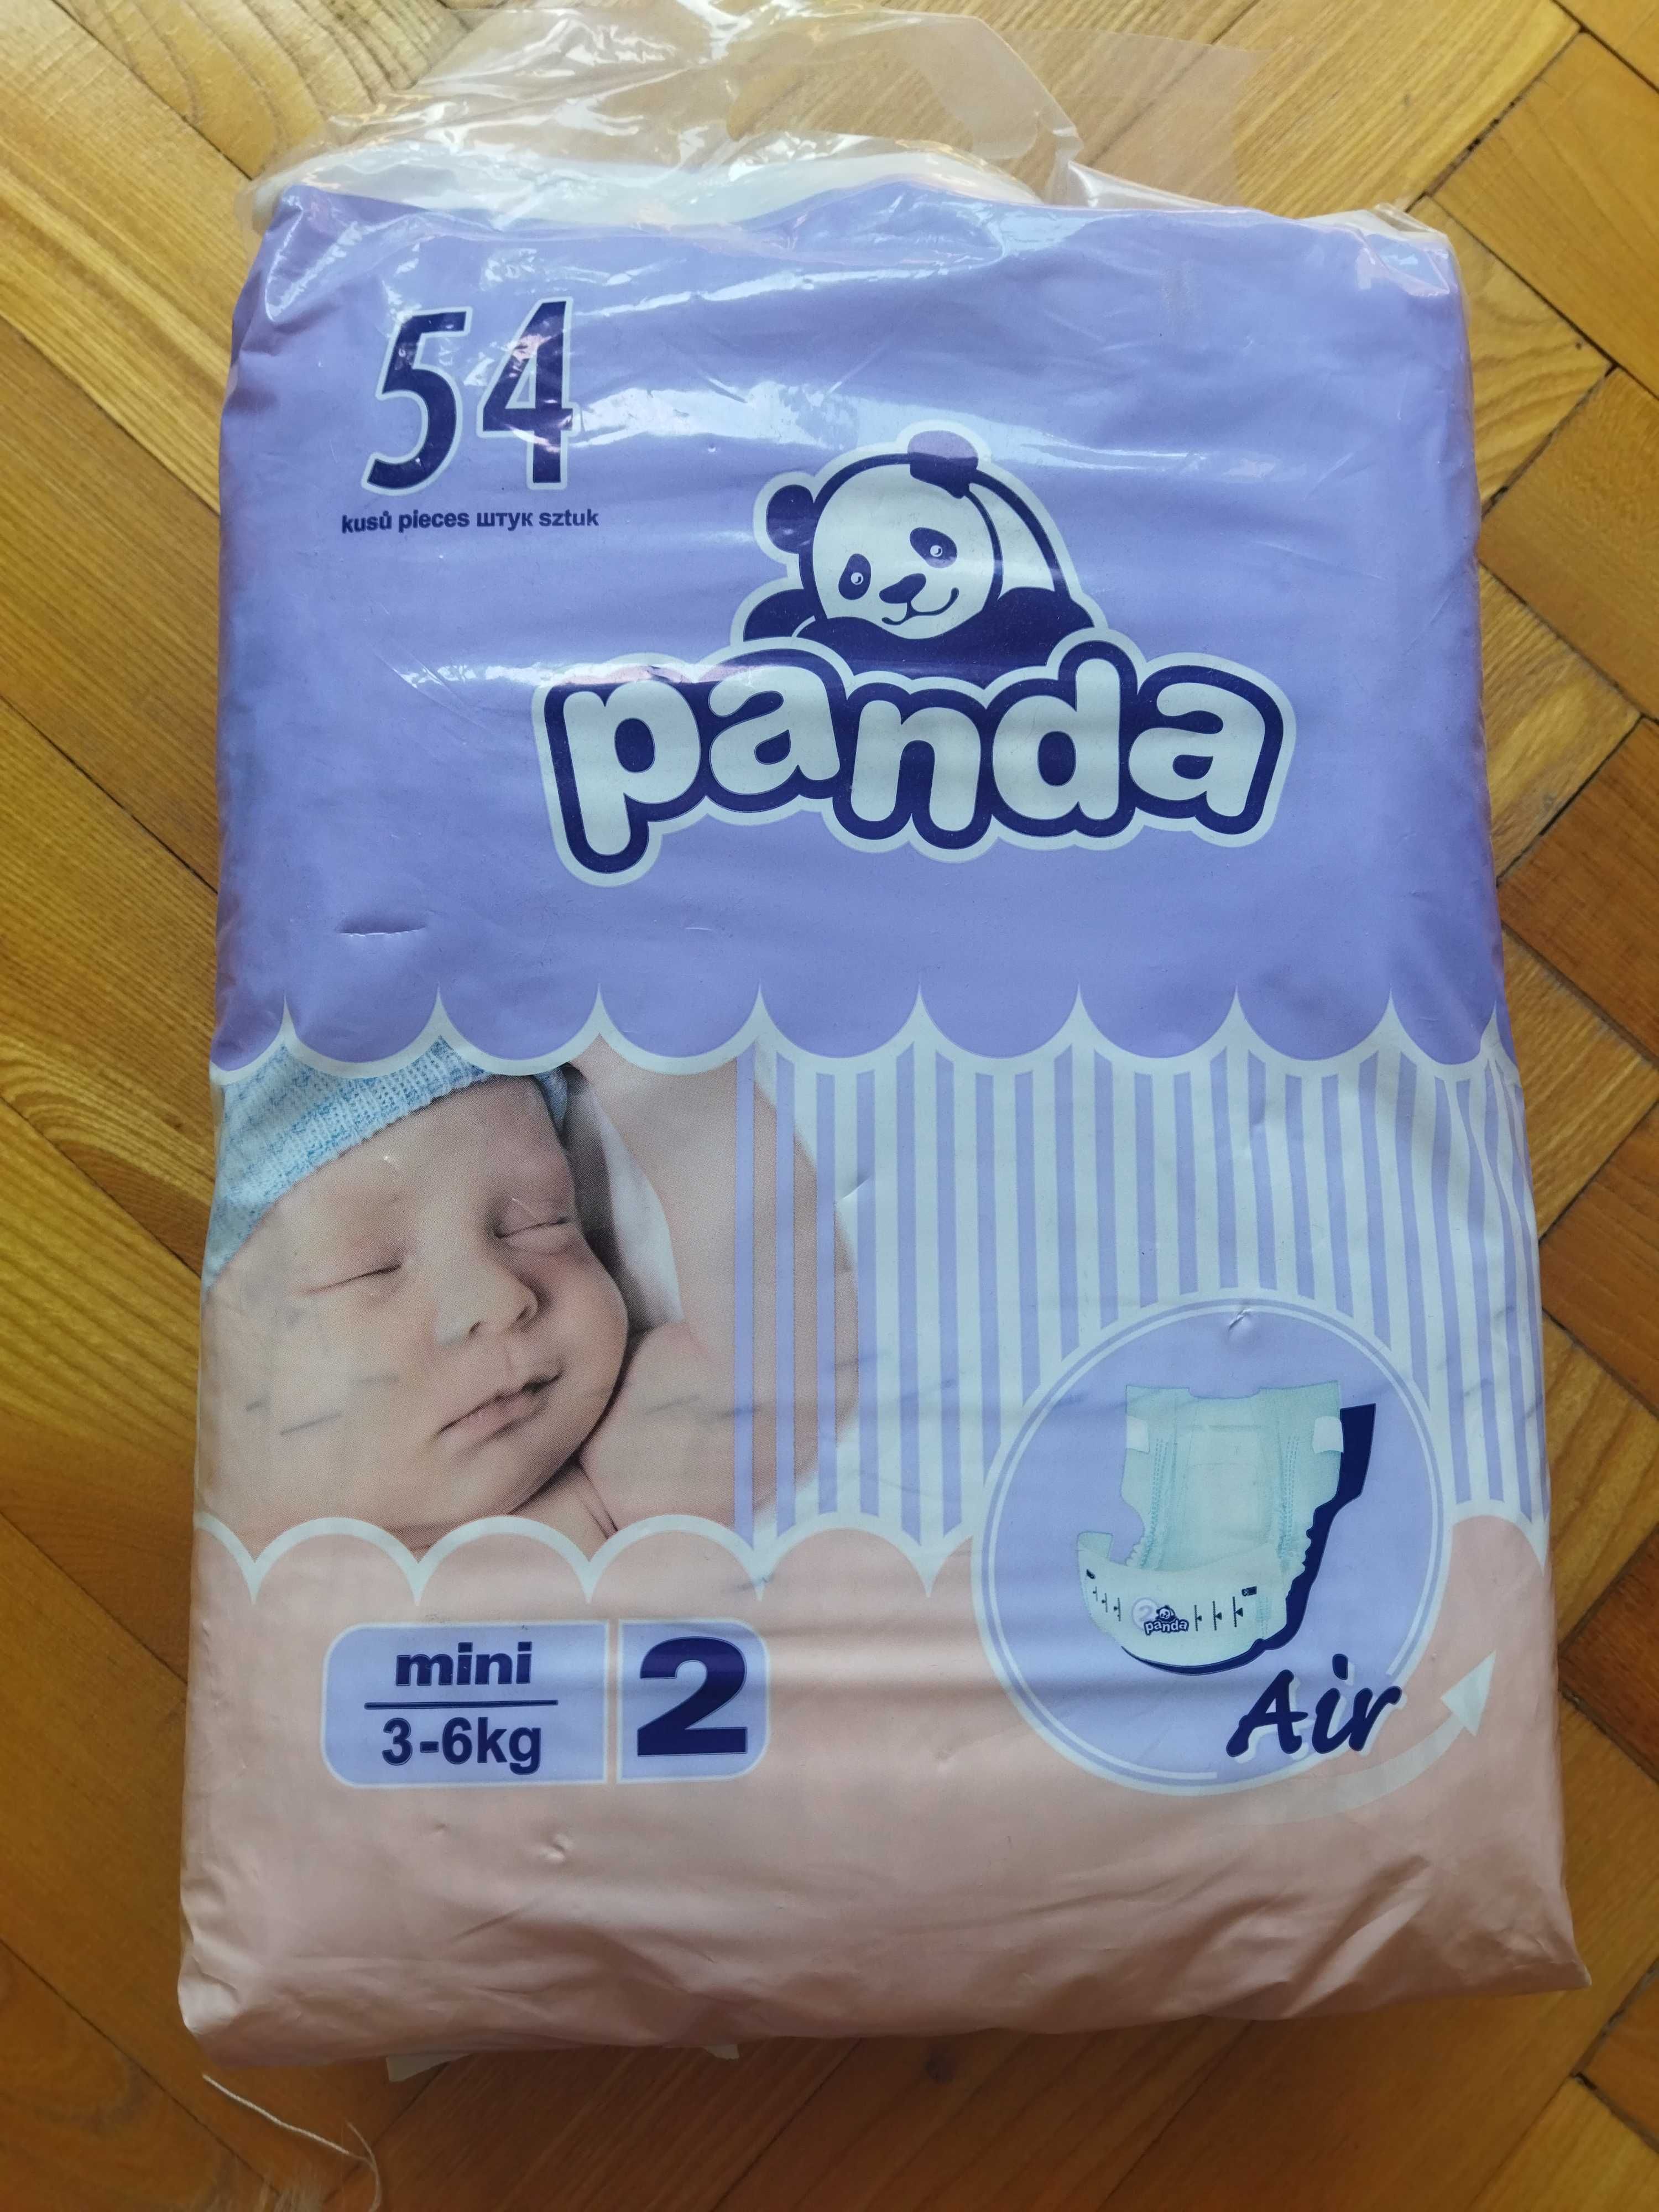 Продам пампесры Панда, 2 размер